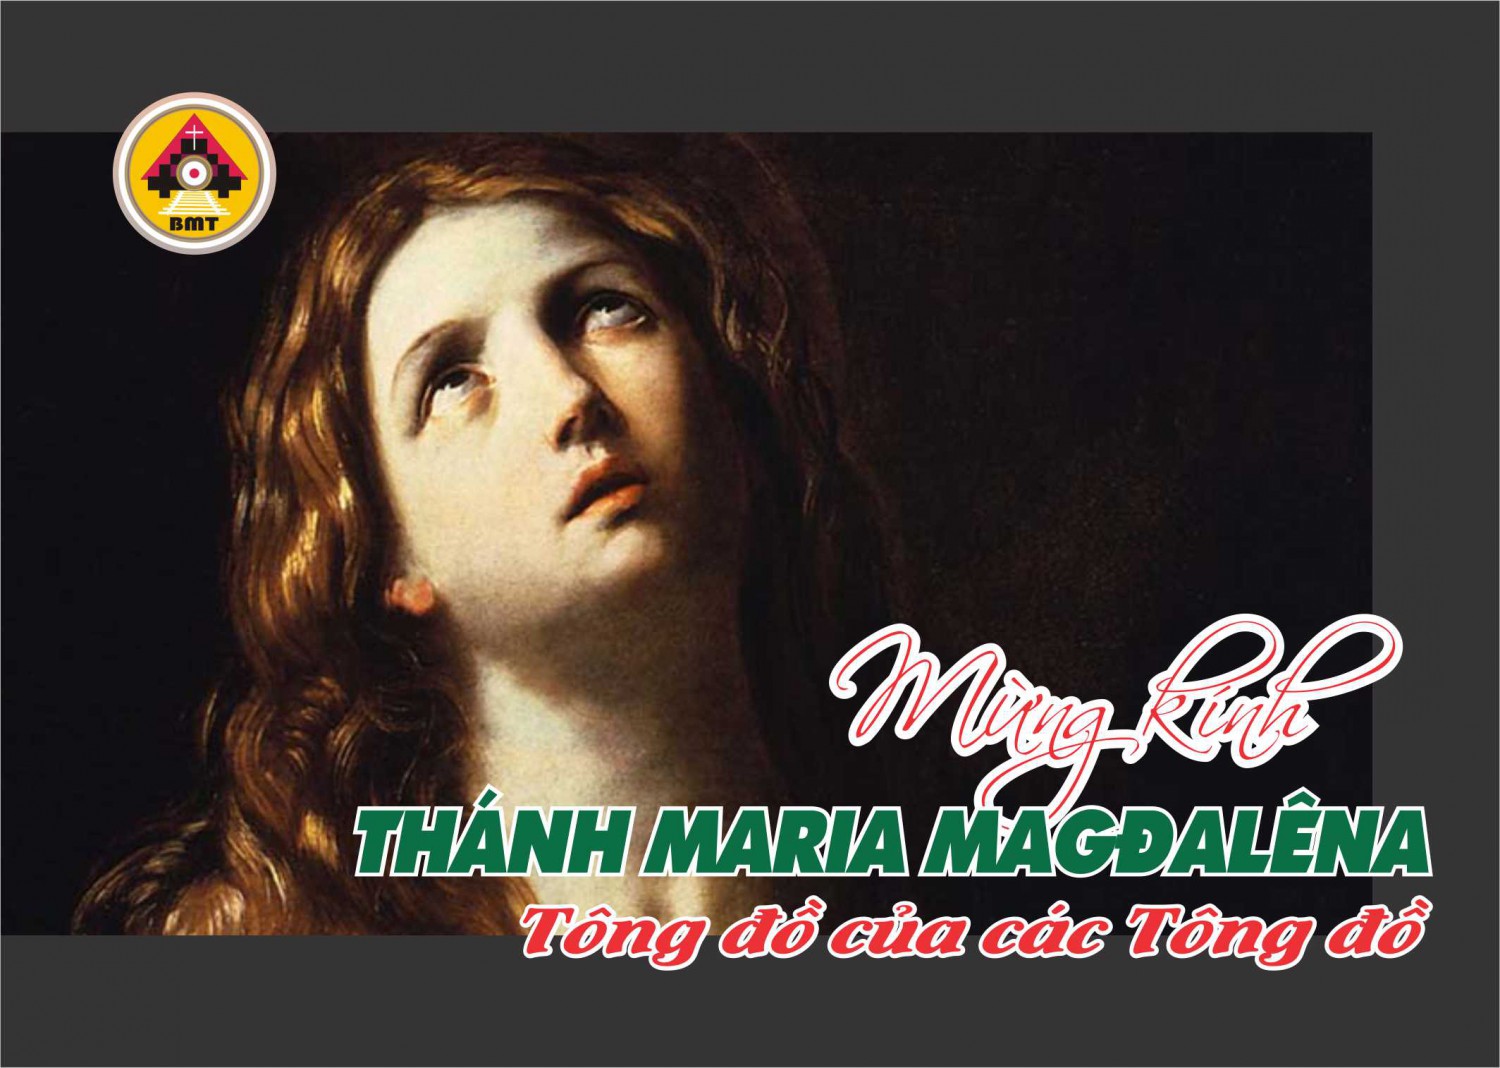 Thánh Maria Magđalêna